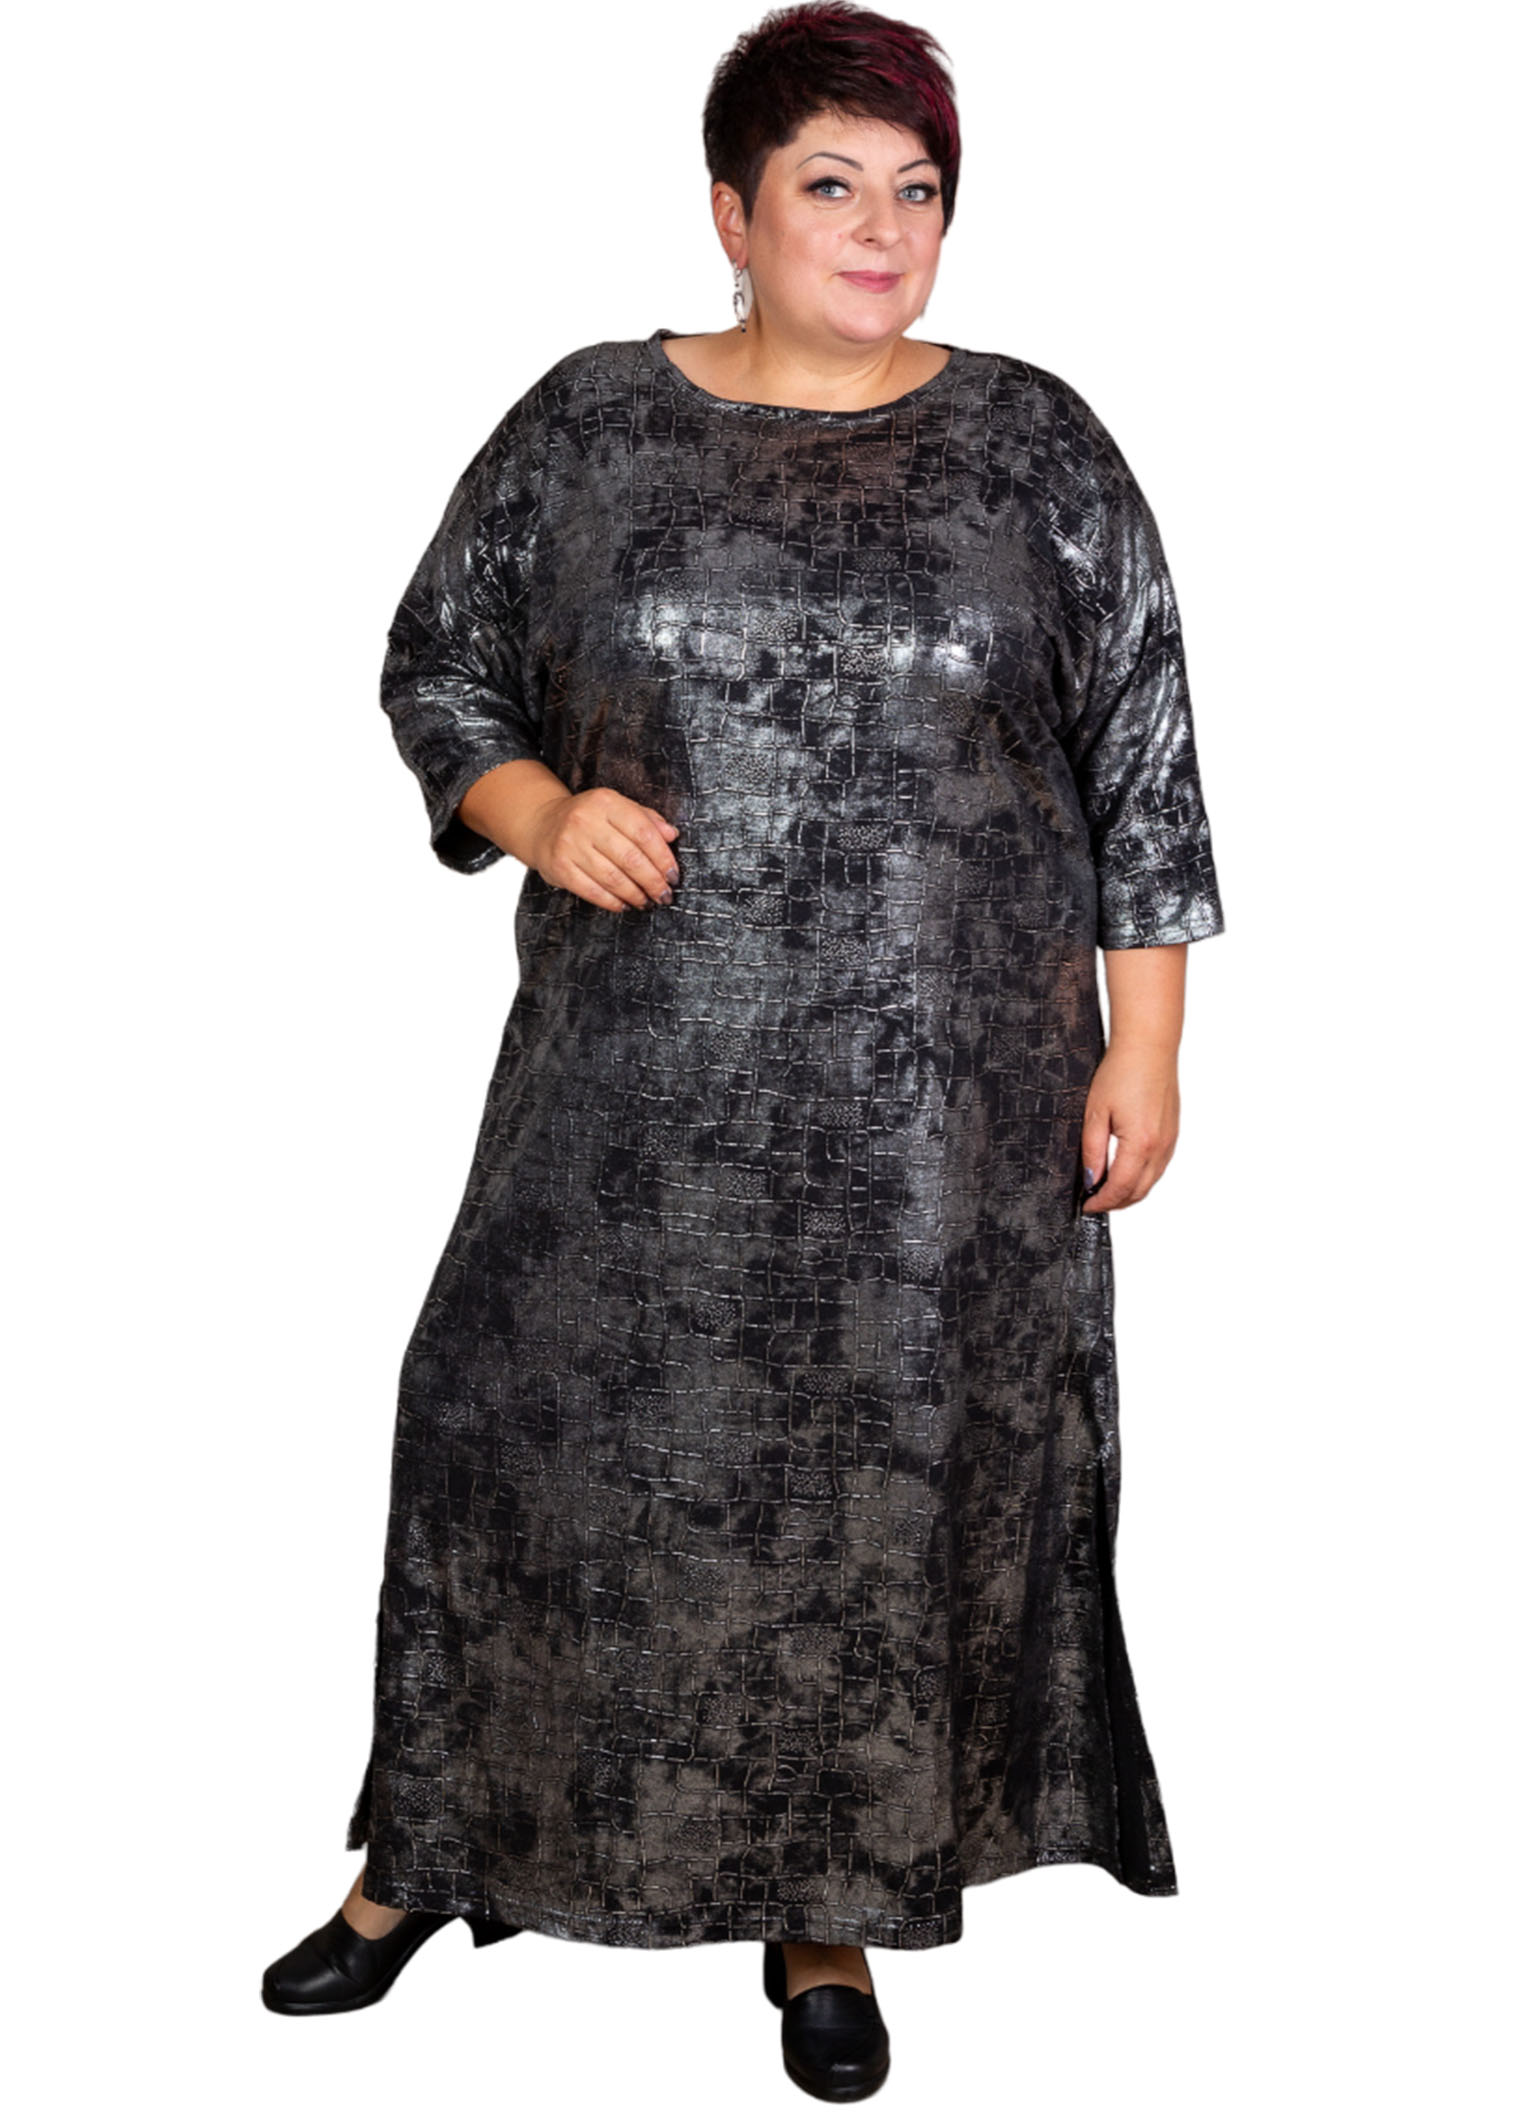 Платье женское Полное Счастье ОК-ПЛ-23-0310 черное 58 RU